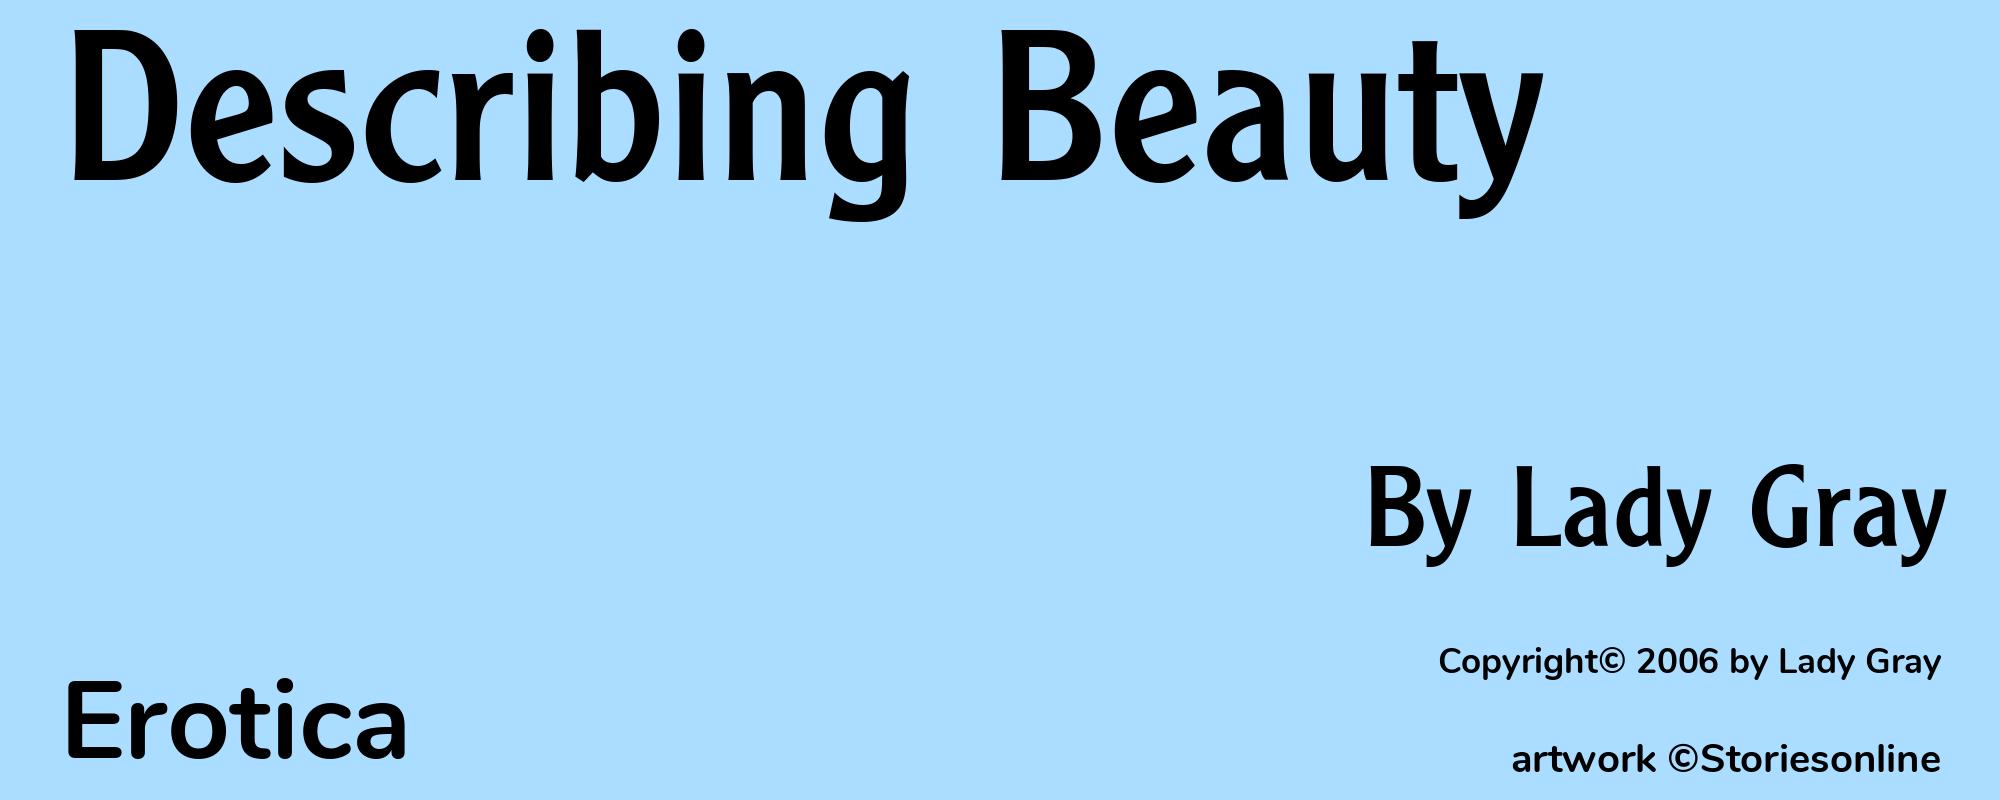 Describing Beauty - Cover